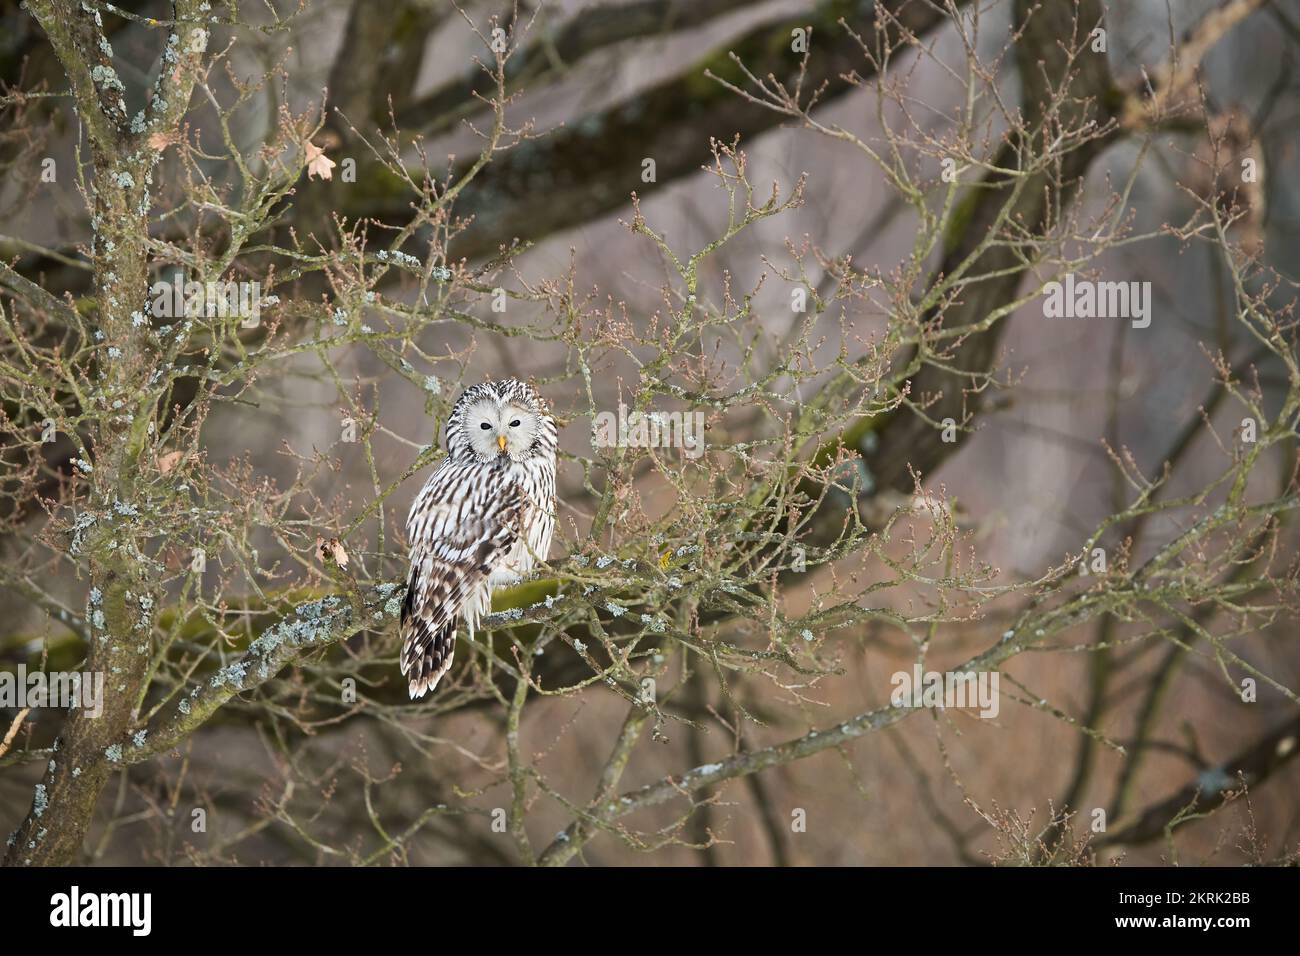 Lechuza Ural, strix uralensis, descansando sobre el árbol en la naturaleza invernal del bosque. Pájaro blanco sentado en rama en el bosque en invierno. Predat nocturno emplumado Foto de stock